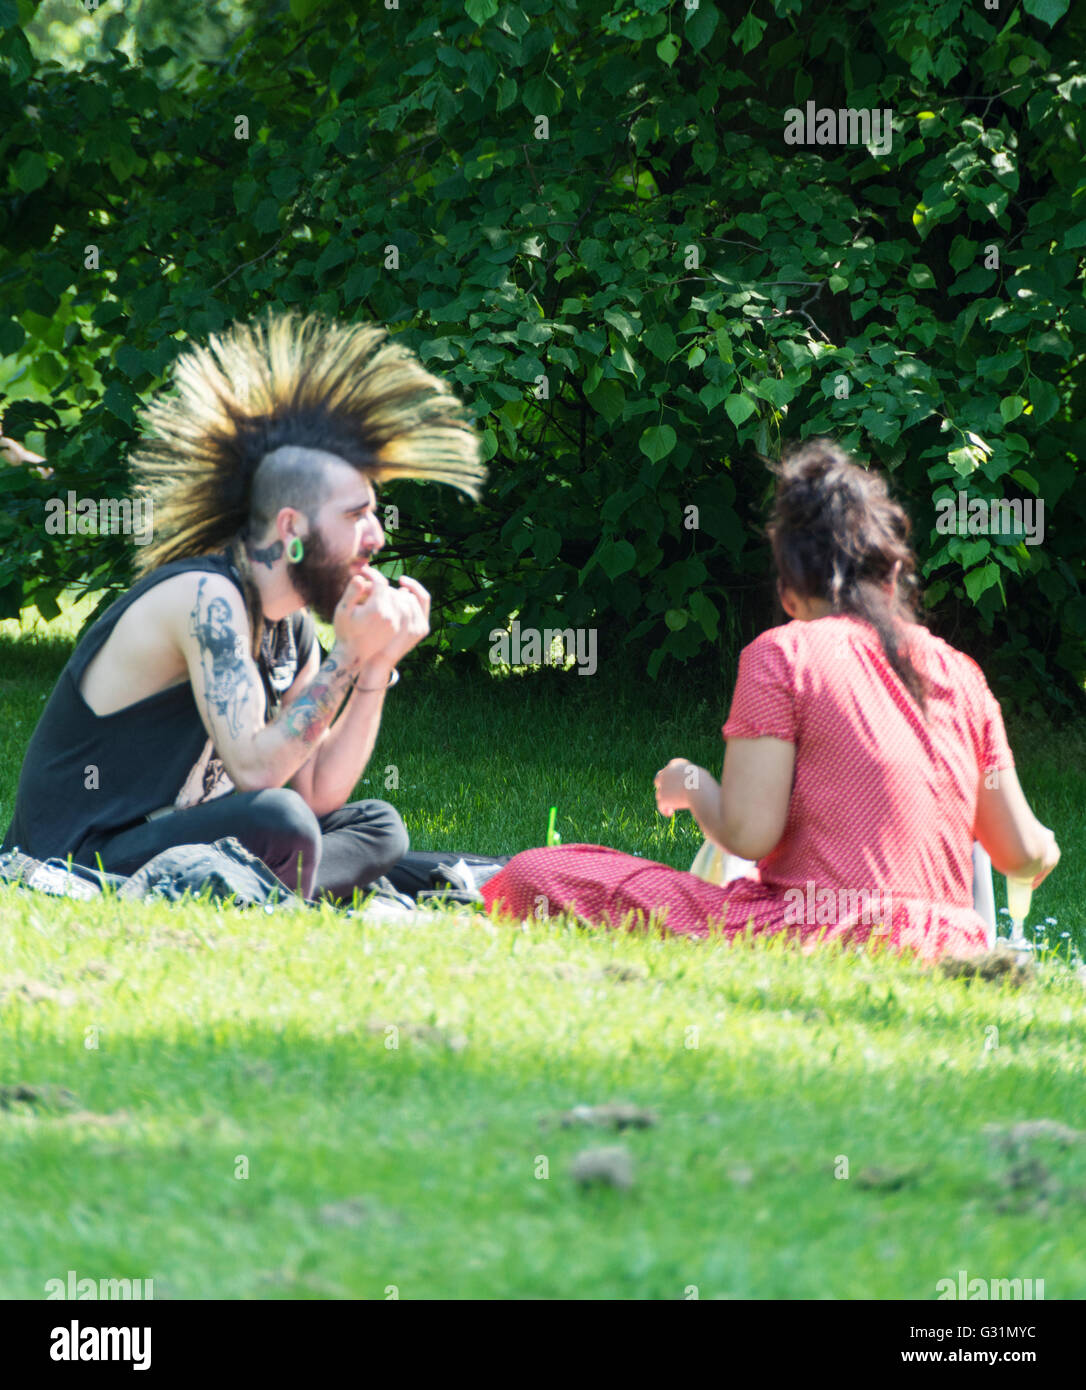 Un jeune homme avec une coiffure Mohican à Hyde Park, City of Westminster, Londres, Angleterre, Royaume-Uni Banque D'Images